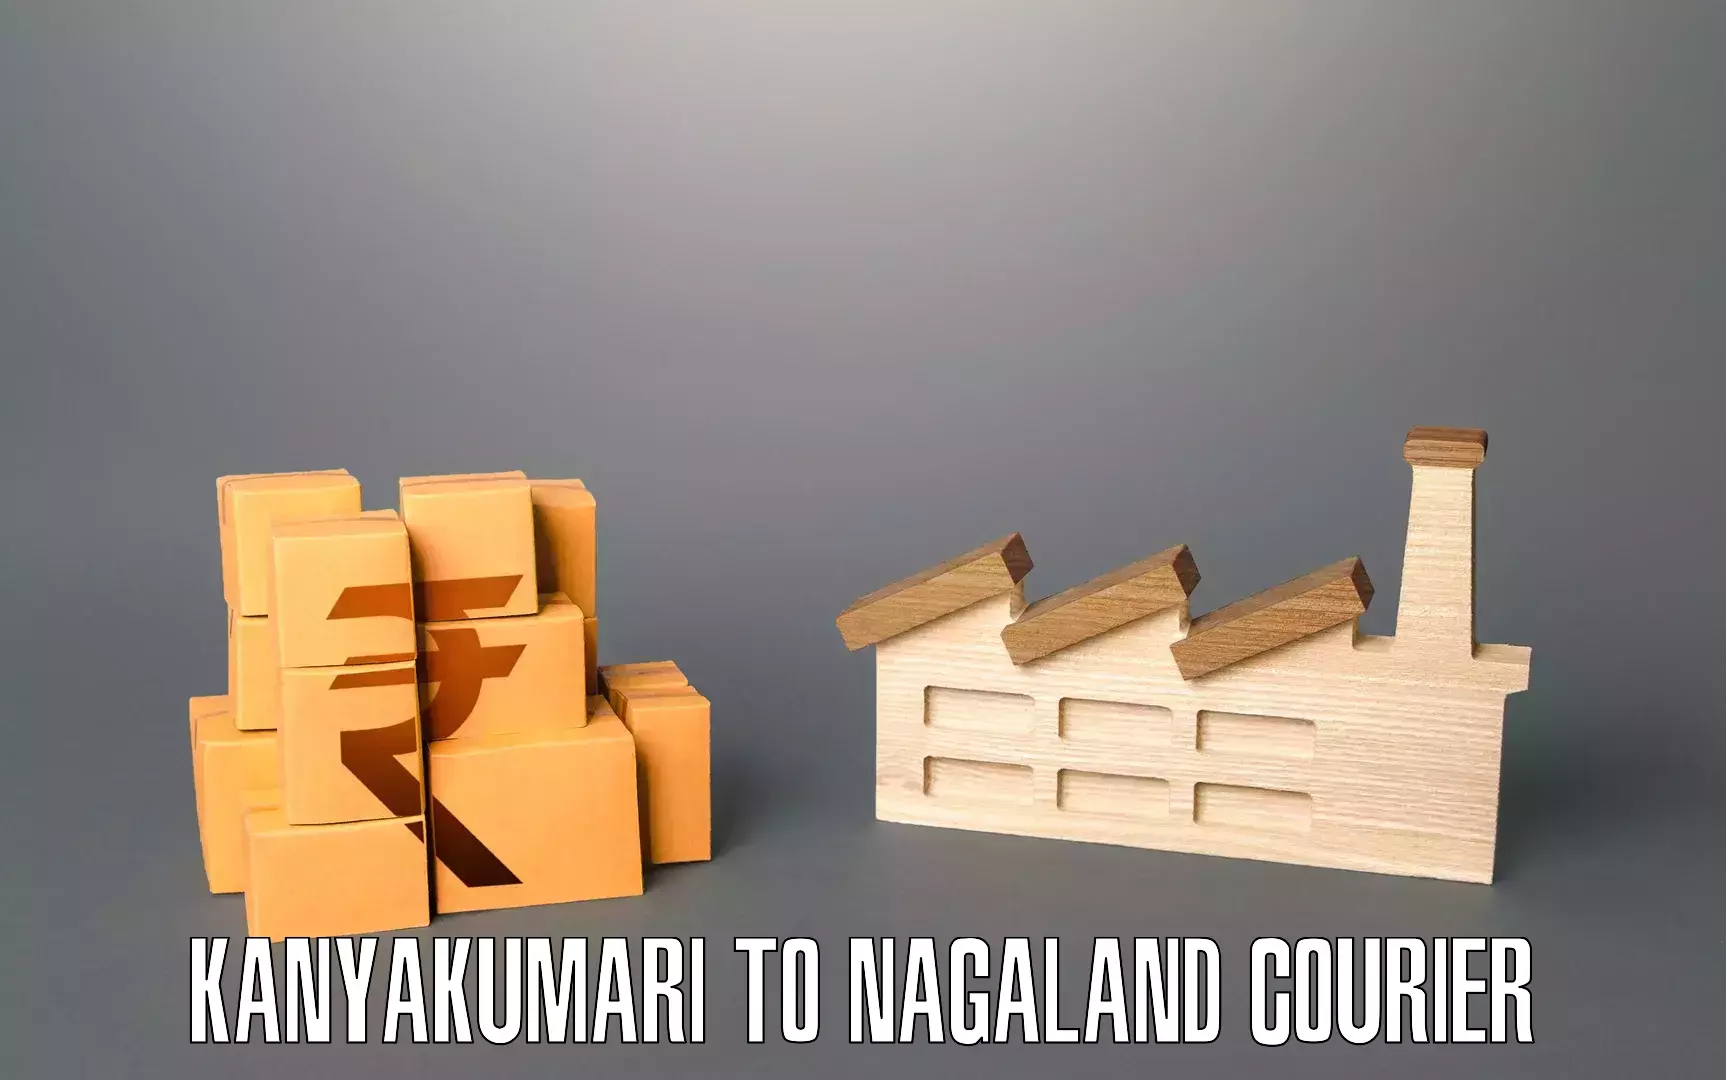 Efficient packing and moving in Kanyakumari to Nagaland